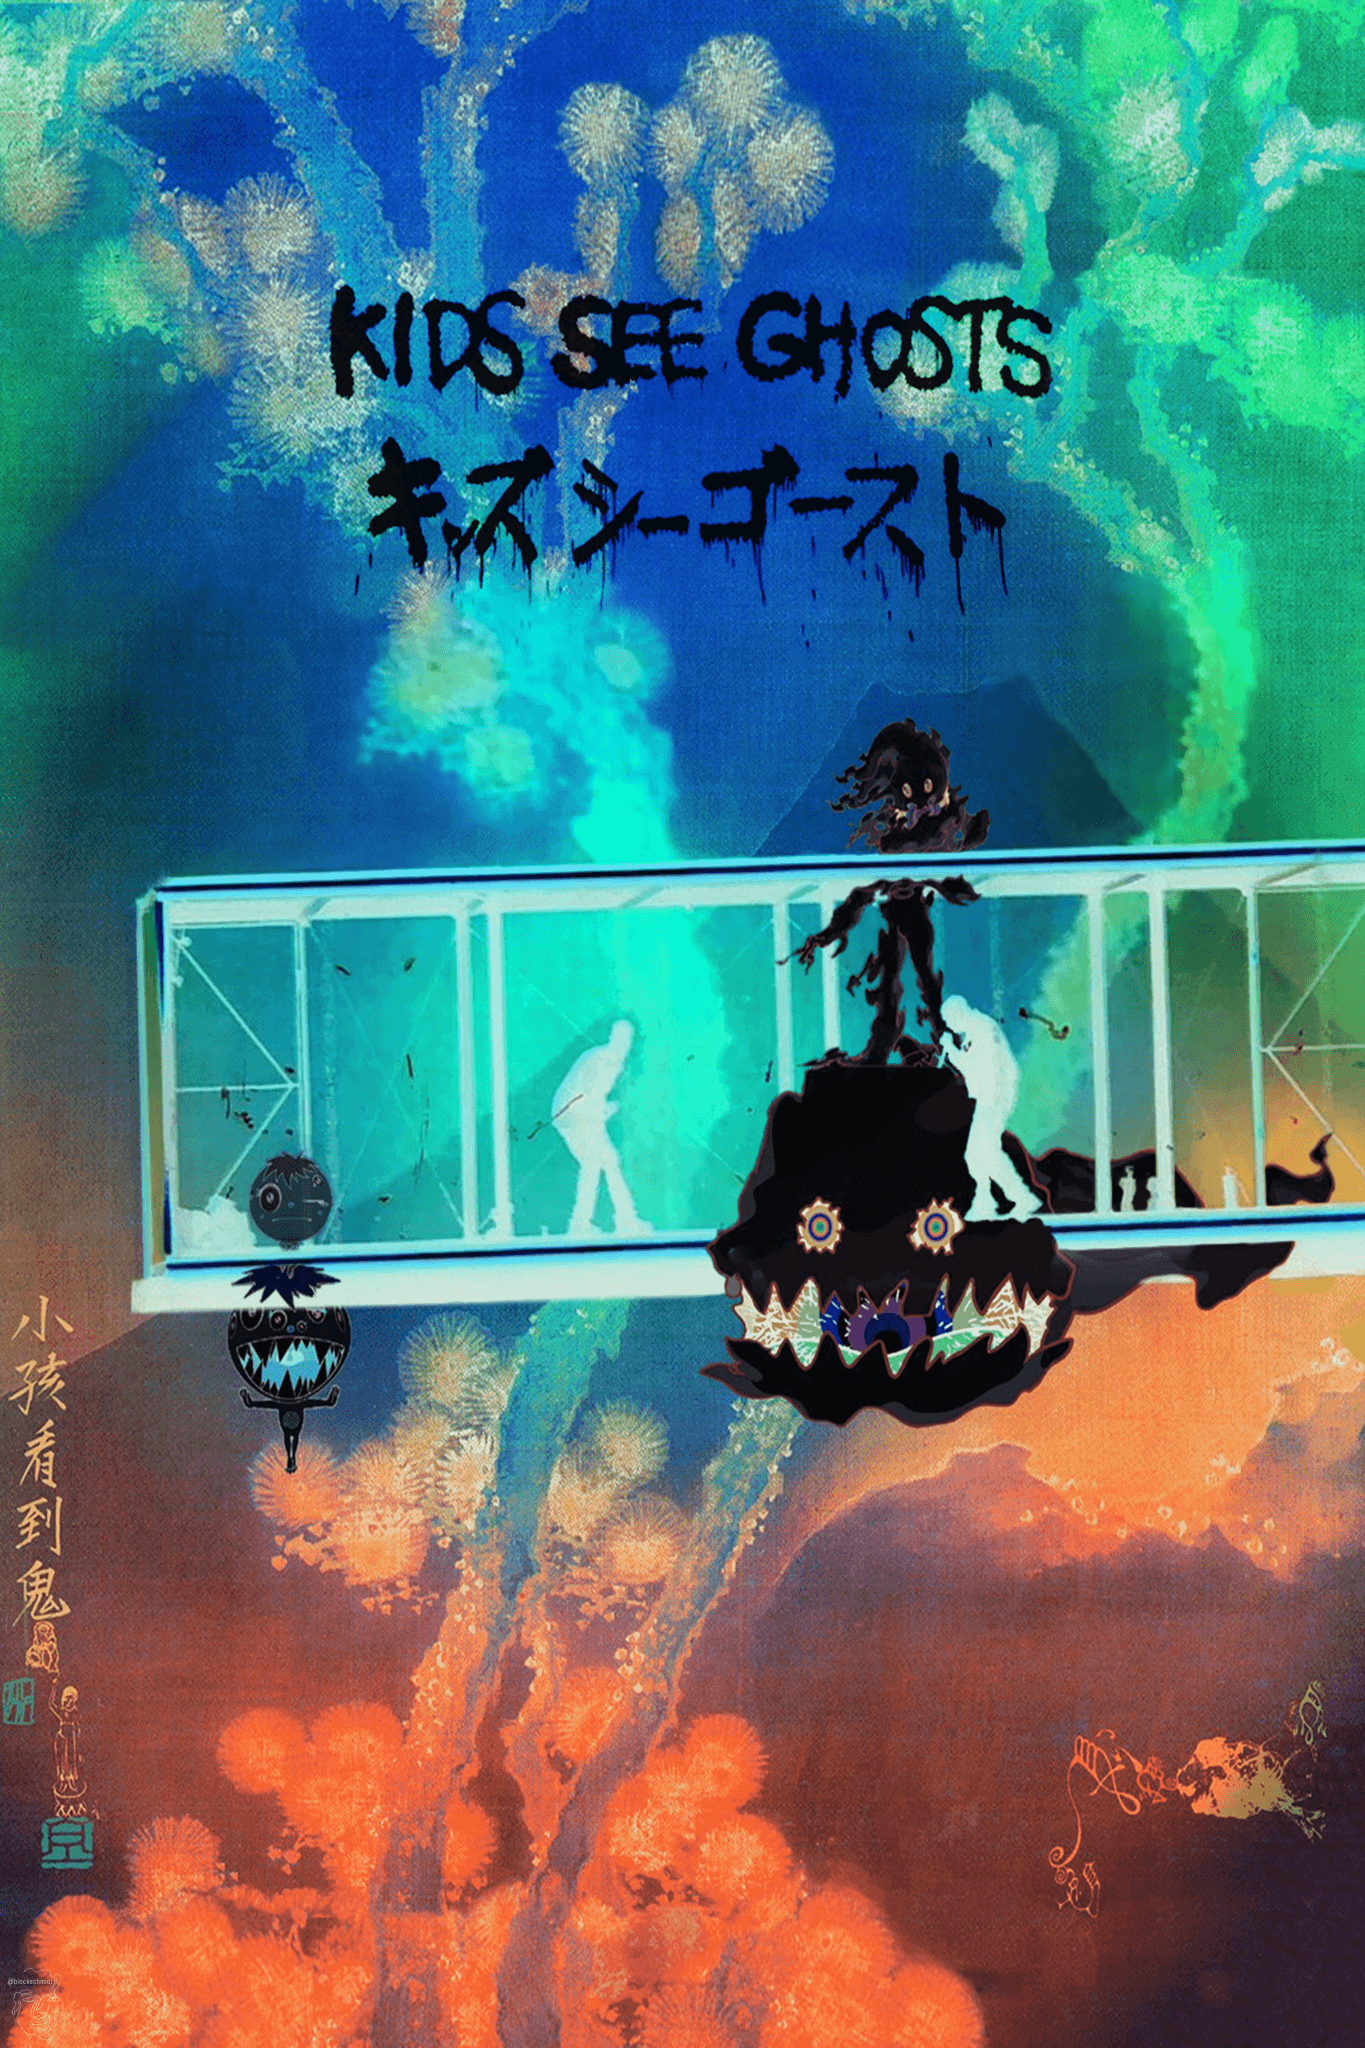 Kanye West x Kid Cudi 'Kids See Ghosts' Nighttime Poster - Posters Plug